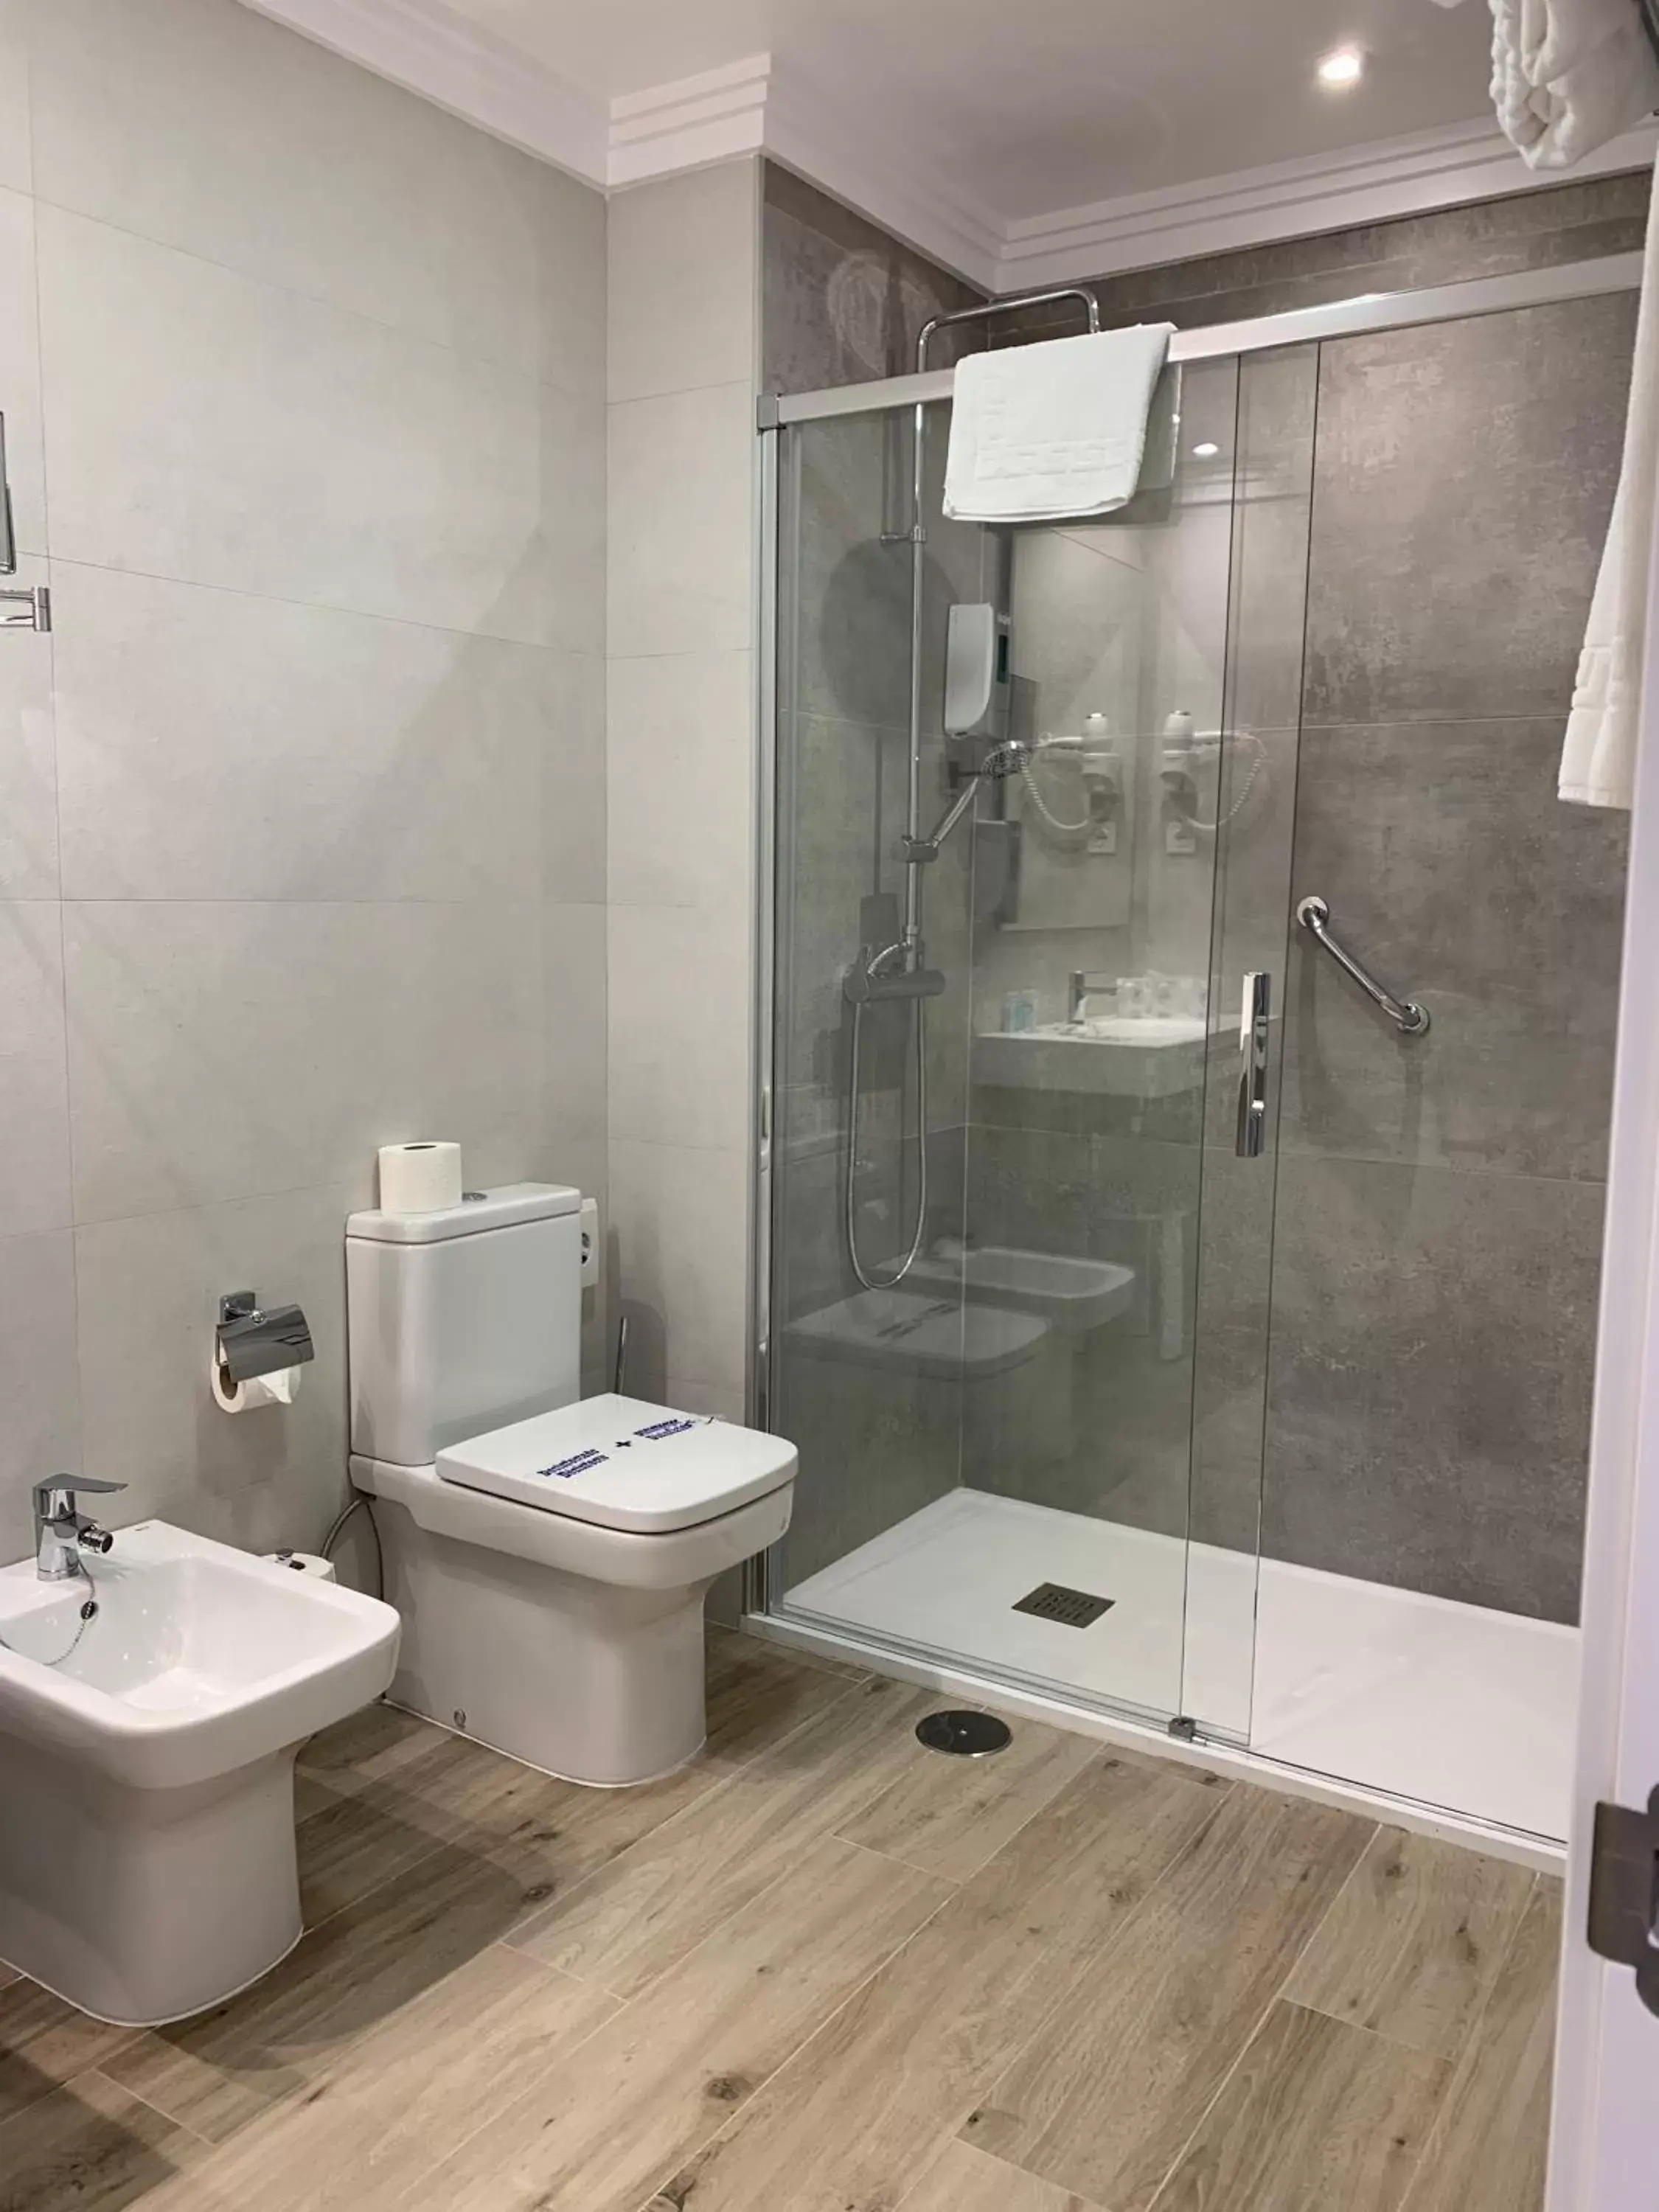 Bathroom in Hotel Puerta del Mar